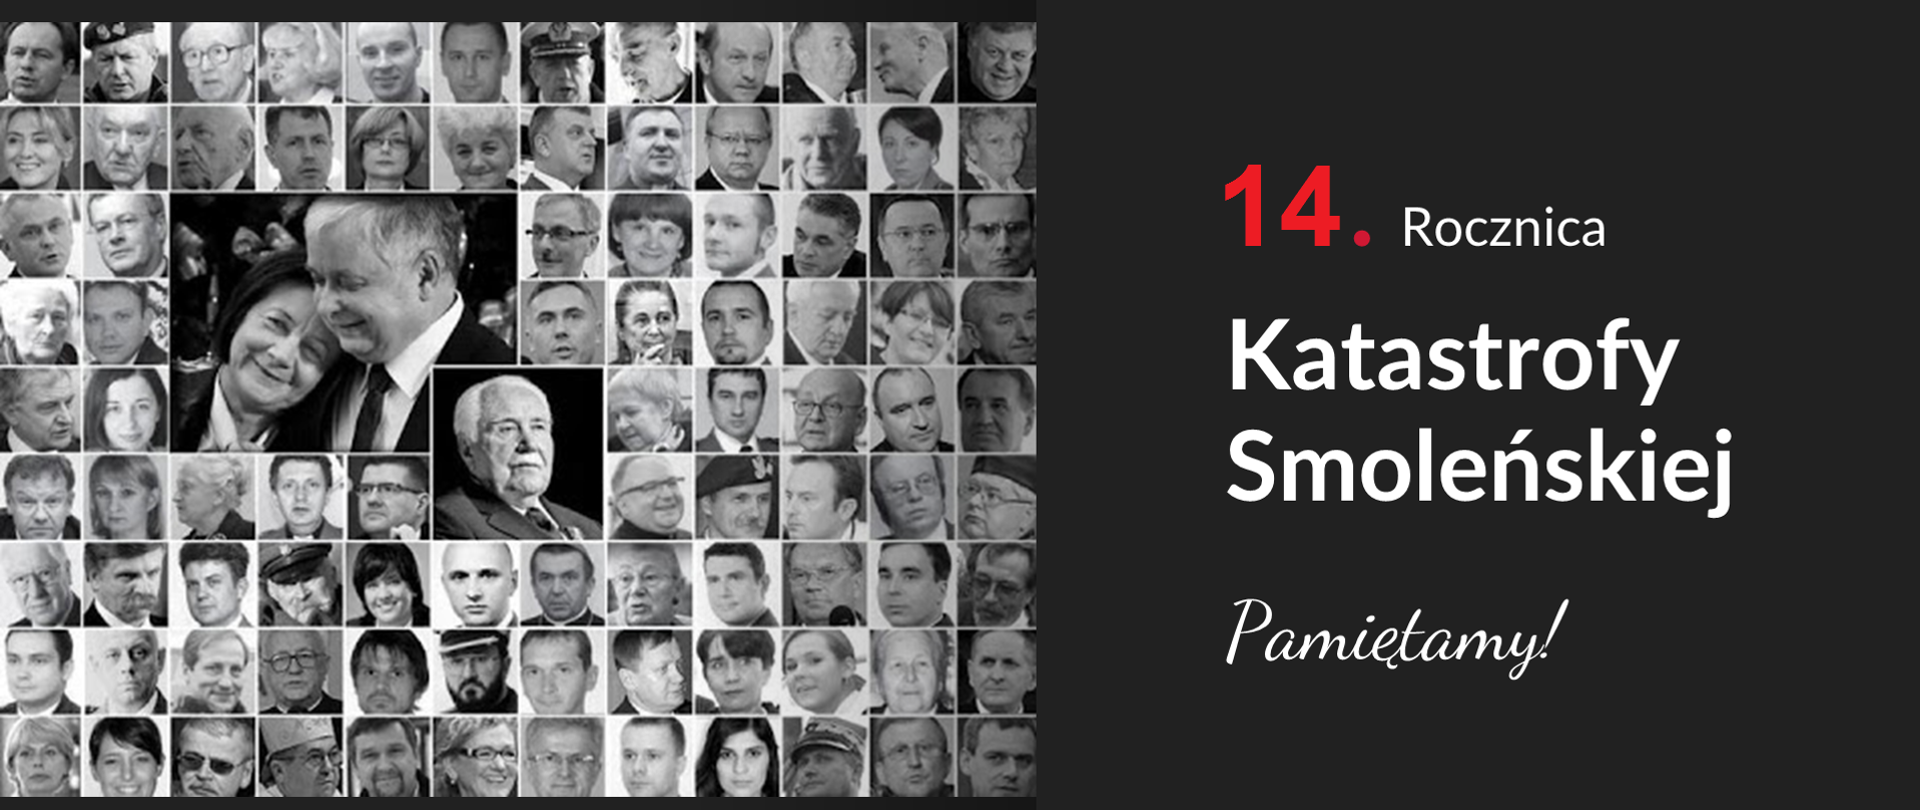 Grafika z białym napisem "14.rocznica Katastrofy Smoleńskiej Pamiętamy!" na czarnym tle z czarno-białymi fotografiami ofiar.